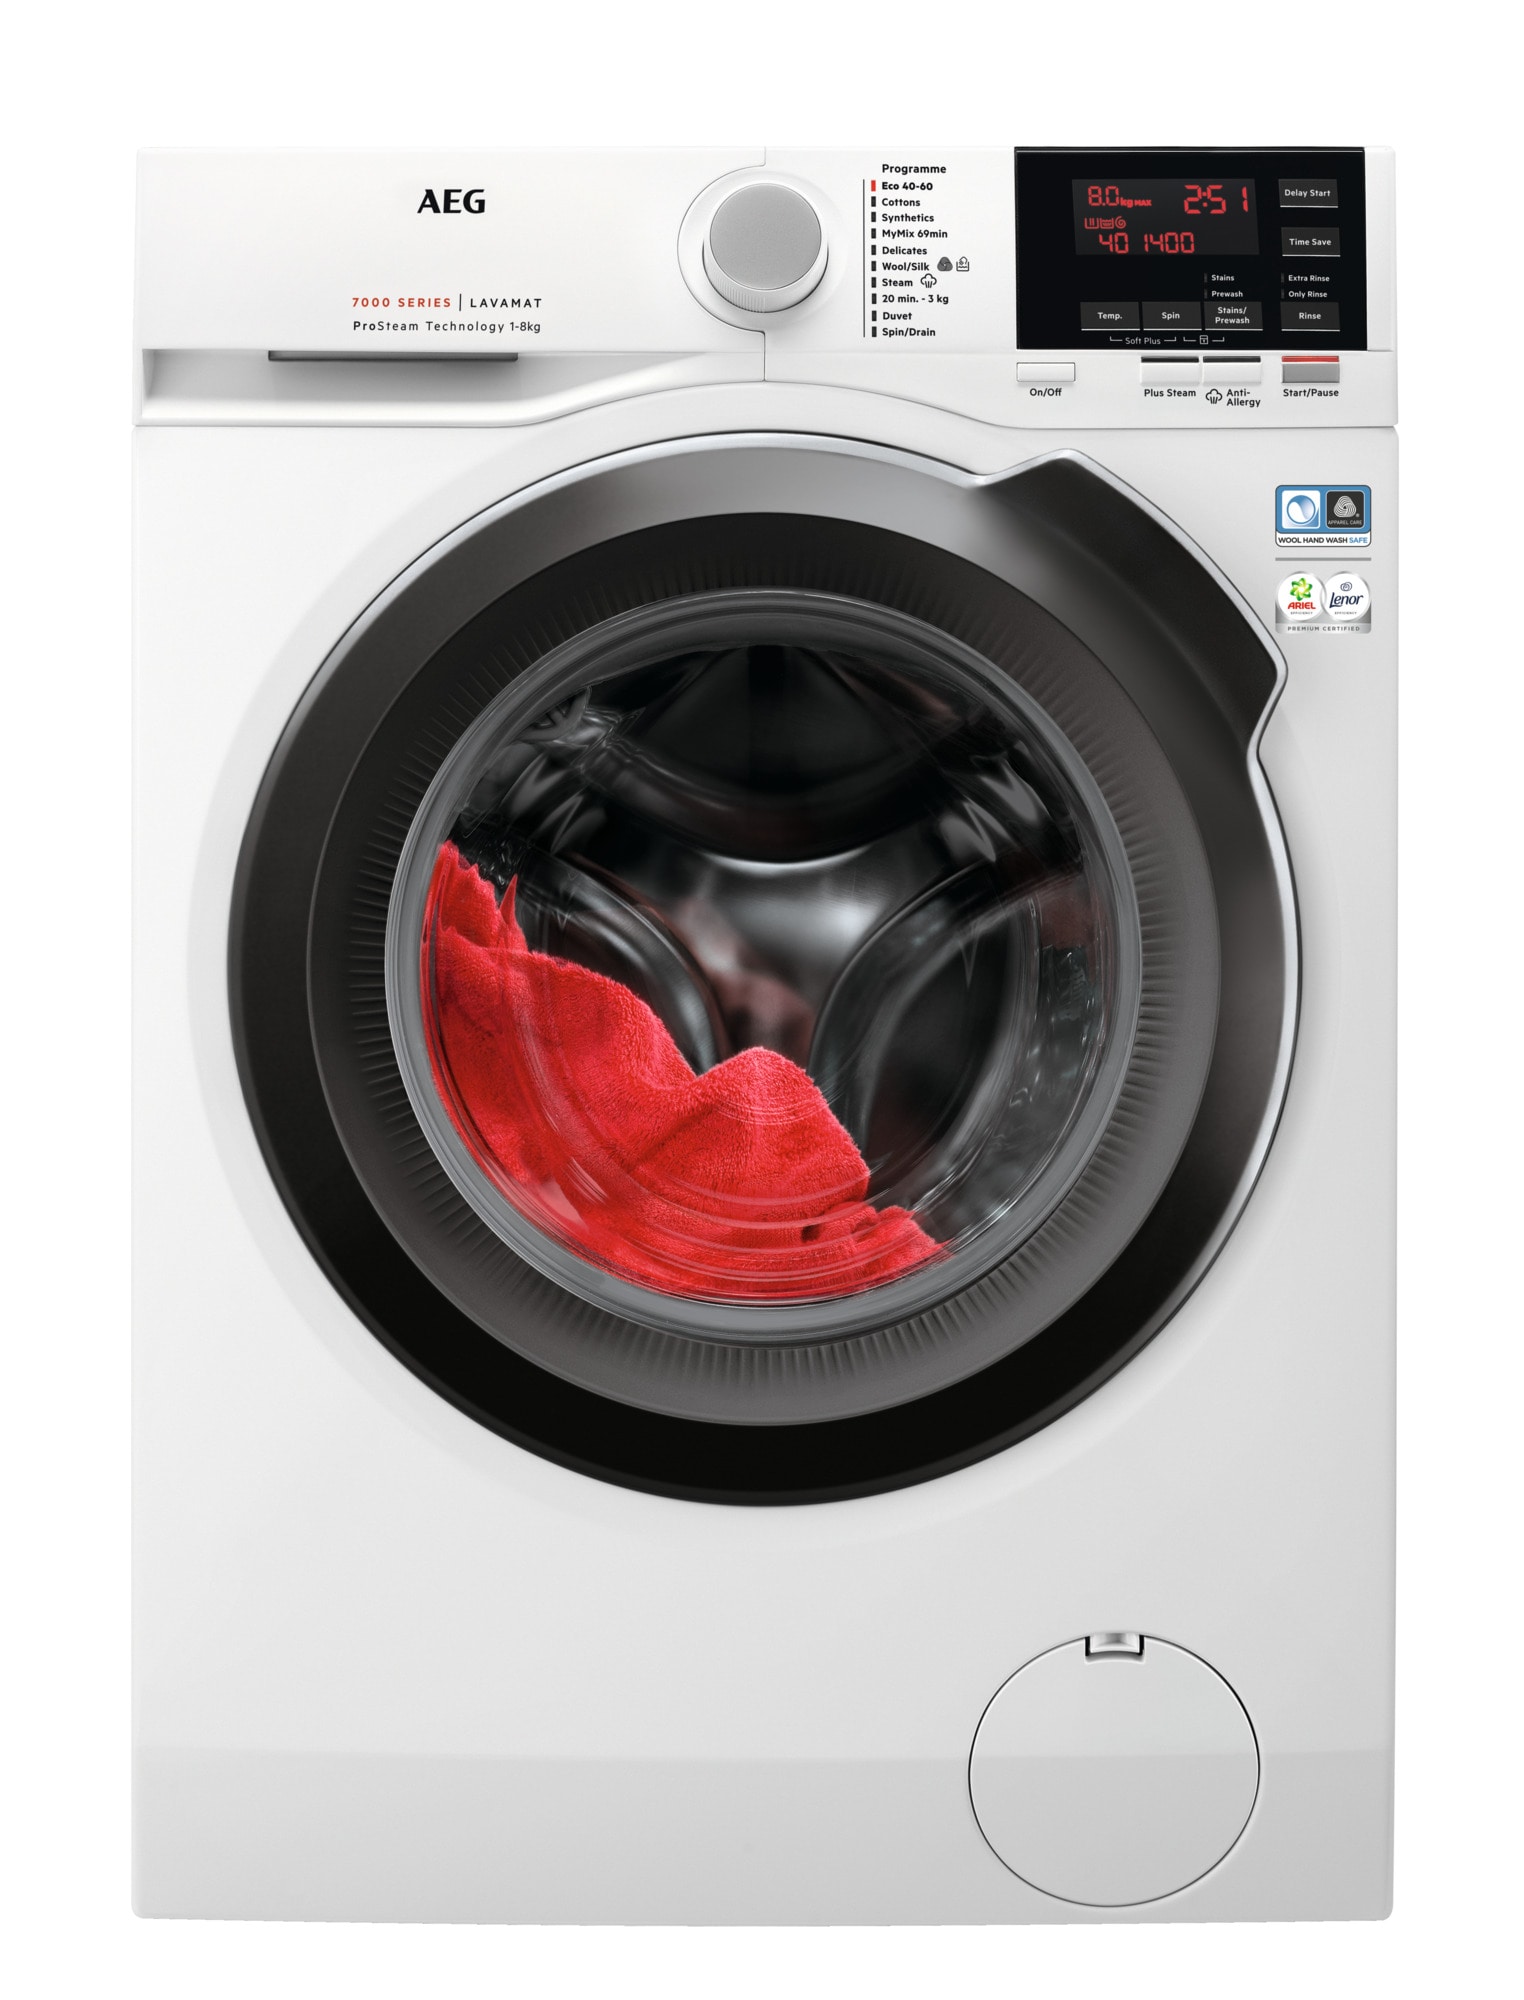 Køb AEG Vaskemaskiner online til meget lav pris!